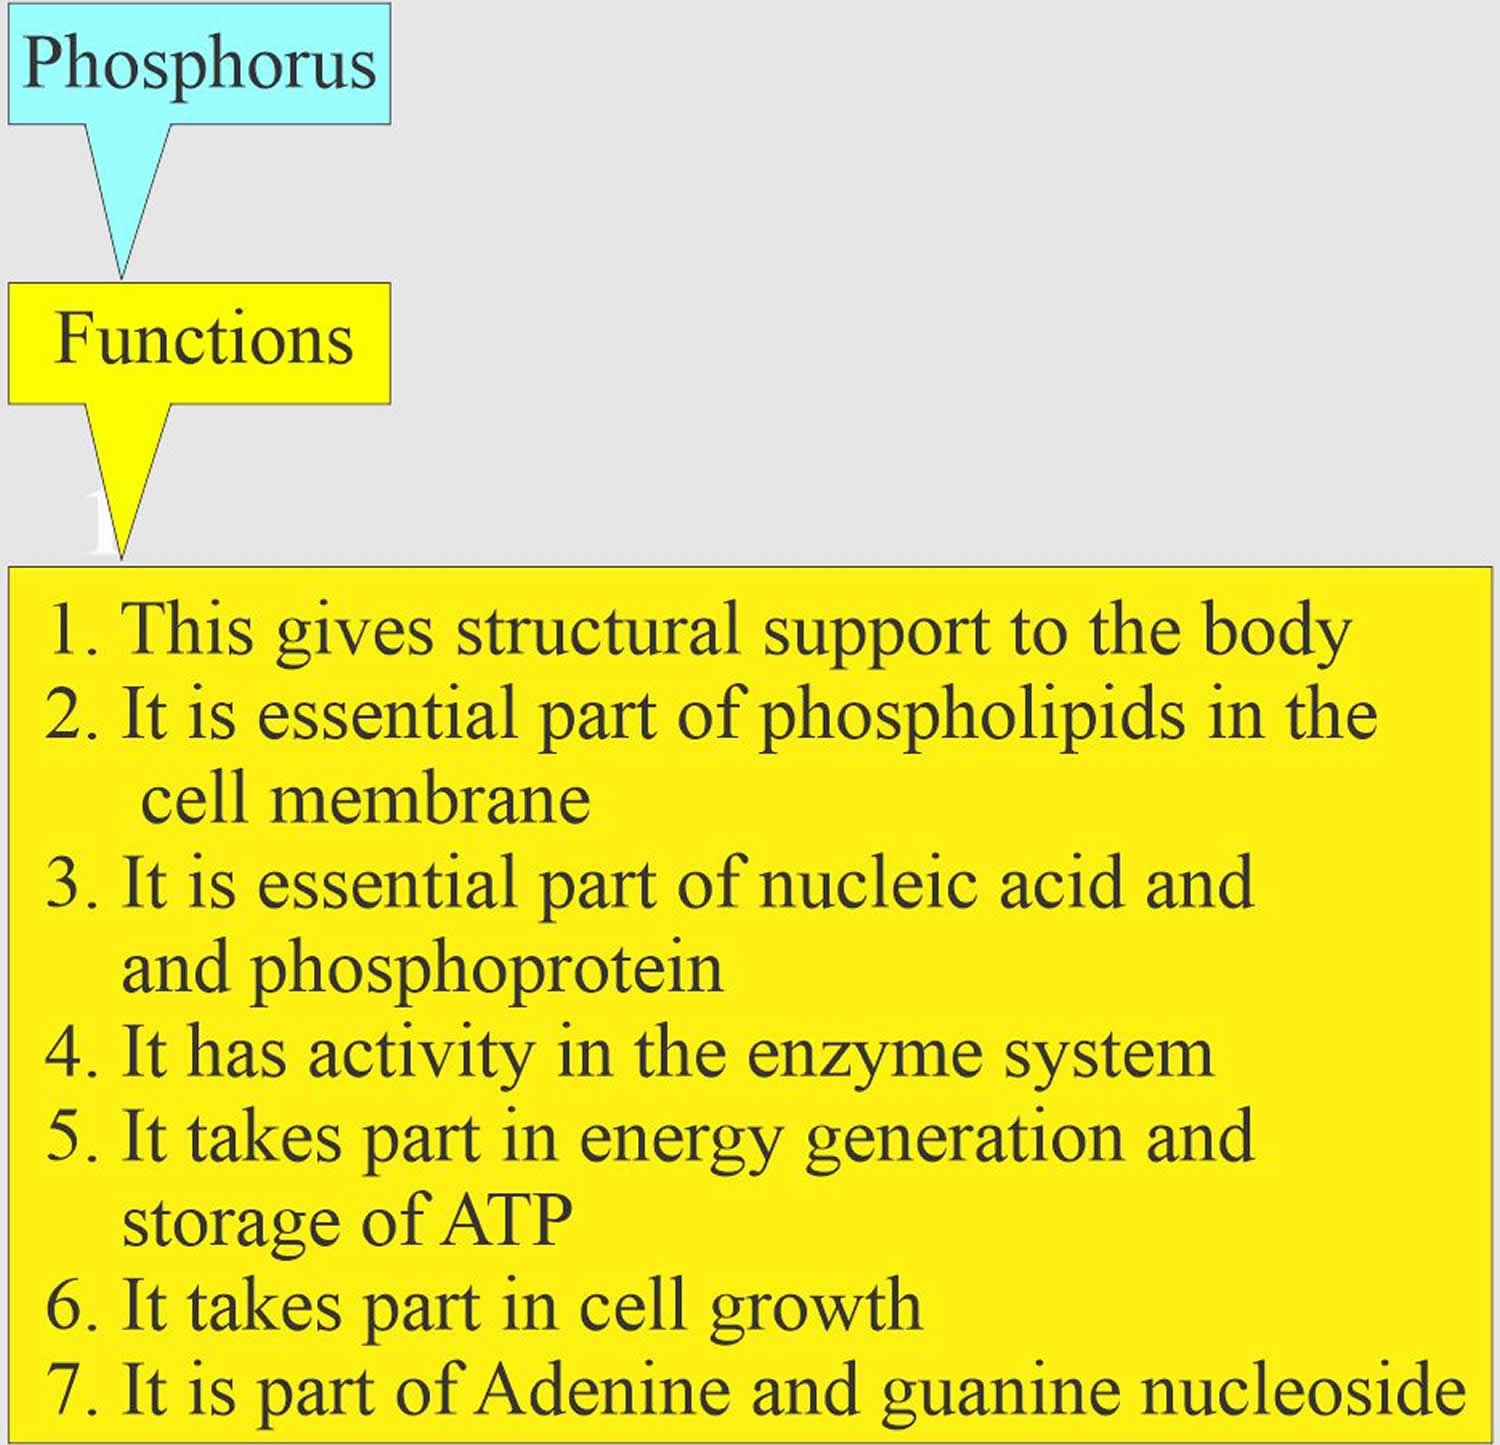 phosphorus functions